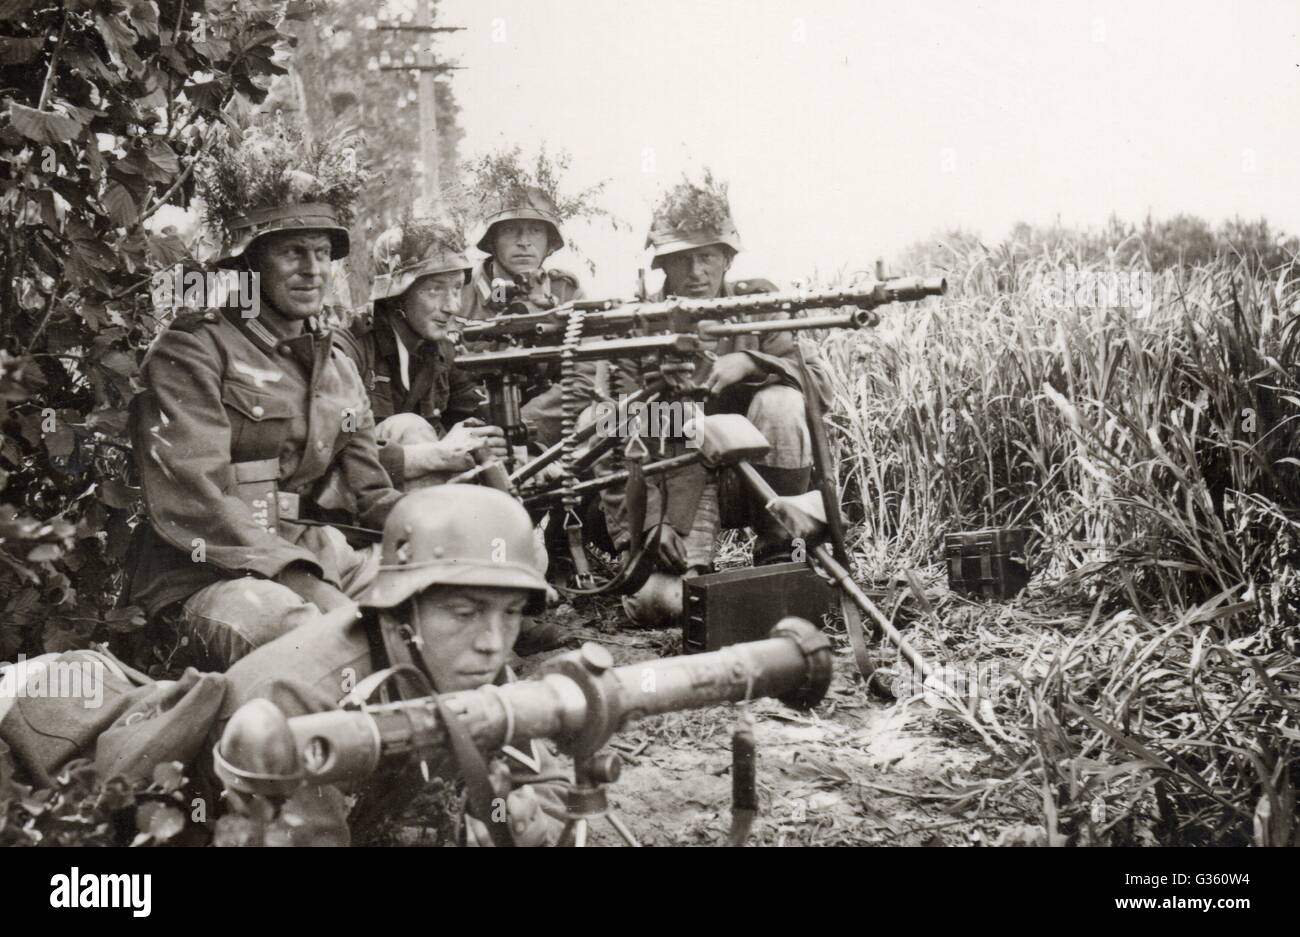 Weltkrieg zwei deutsche Soldaten mit schweren MG Maschinengewehr in Frankreich 1940, Wehrmacht ,MG34, Invasion von Frankreich s/w Foto Stockfoto